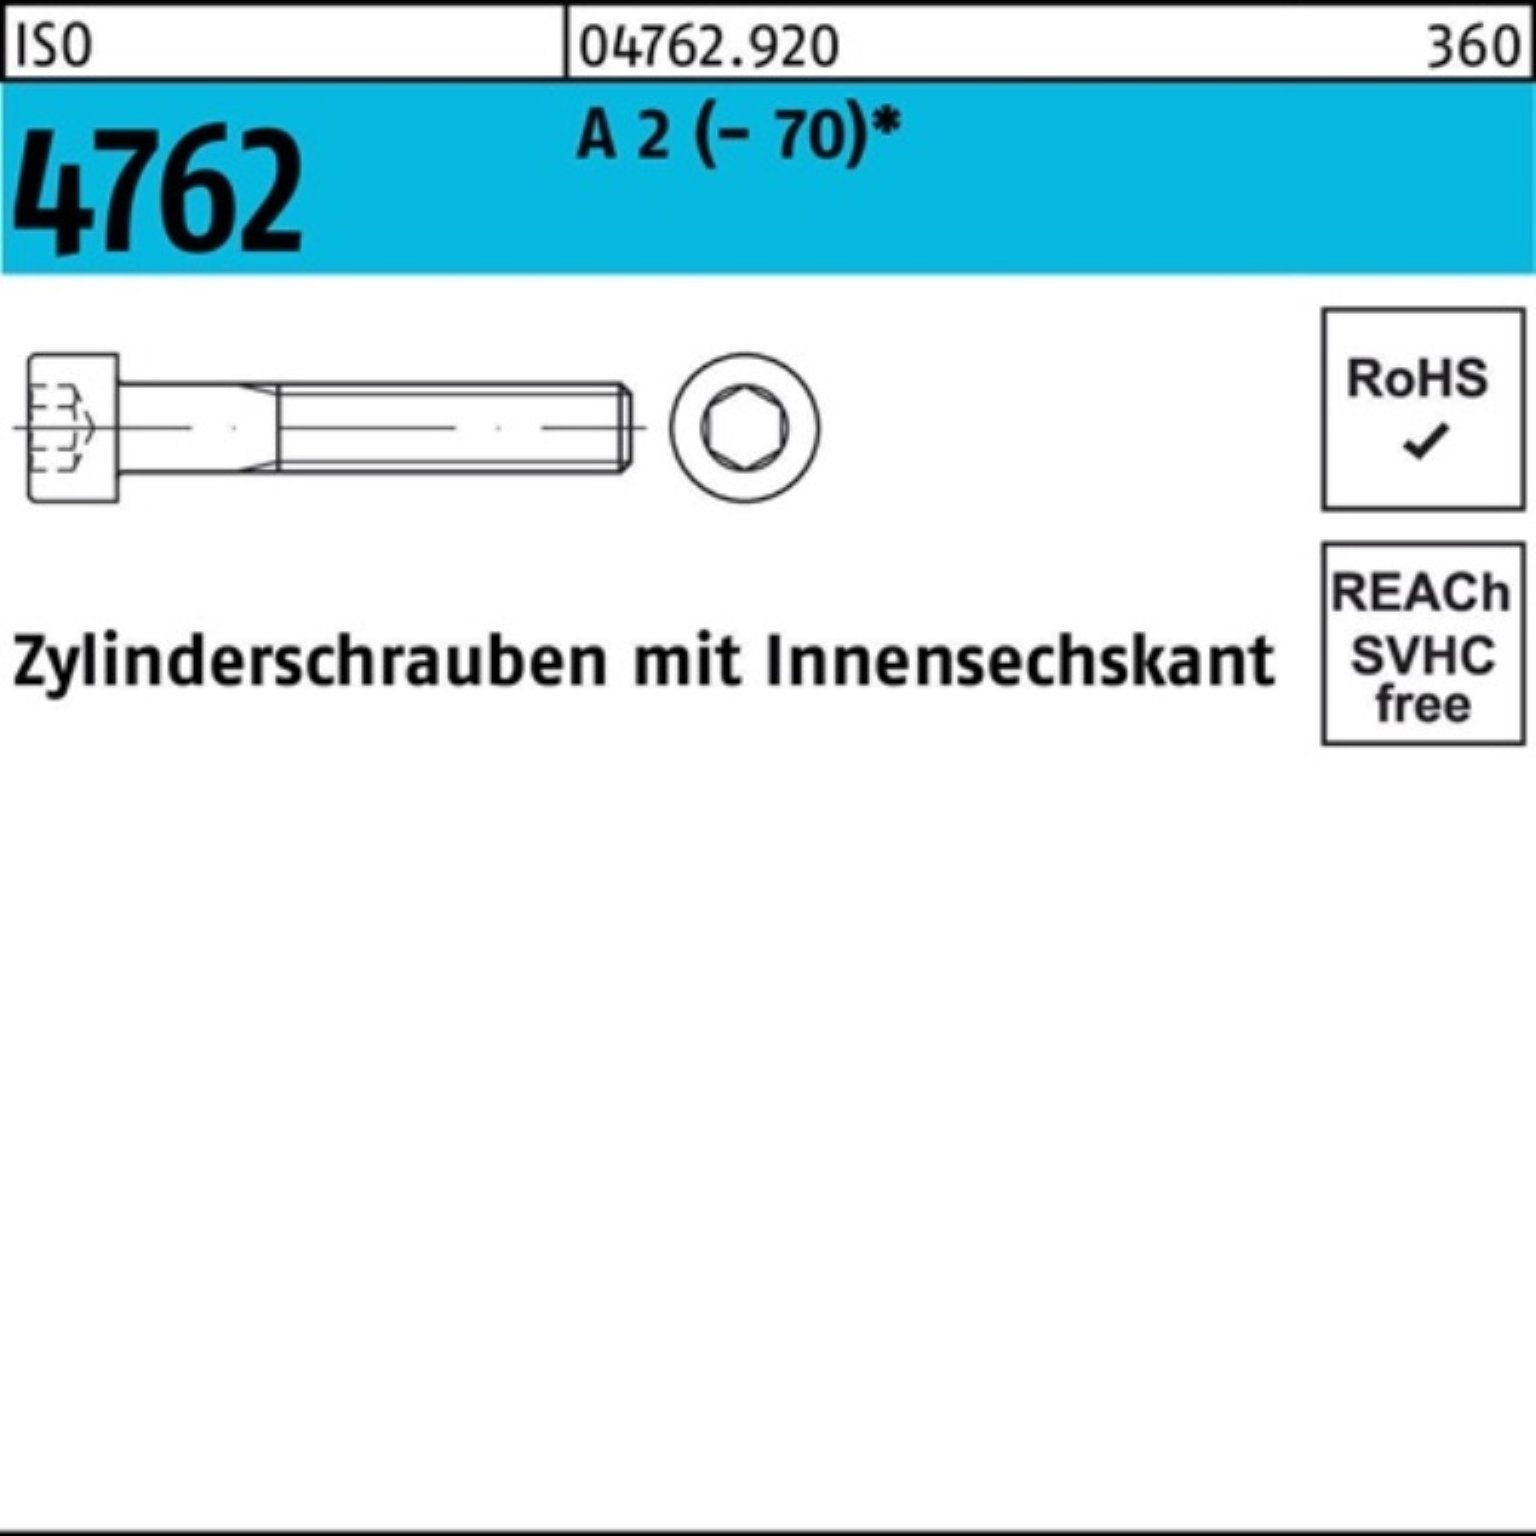 Zylinderschraube Innen-6kt Reyher 2 A 100 ISO S Zylinderschraube 4762 100er (70) 18 Pack M5x